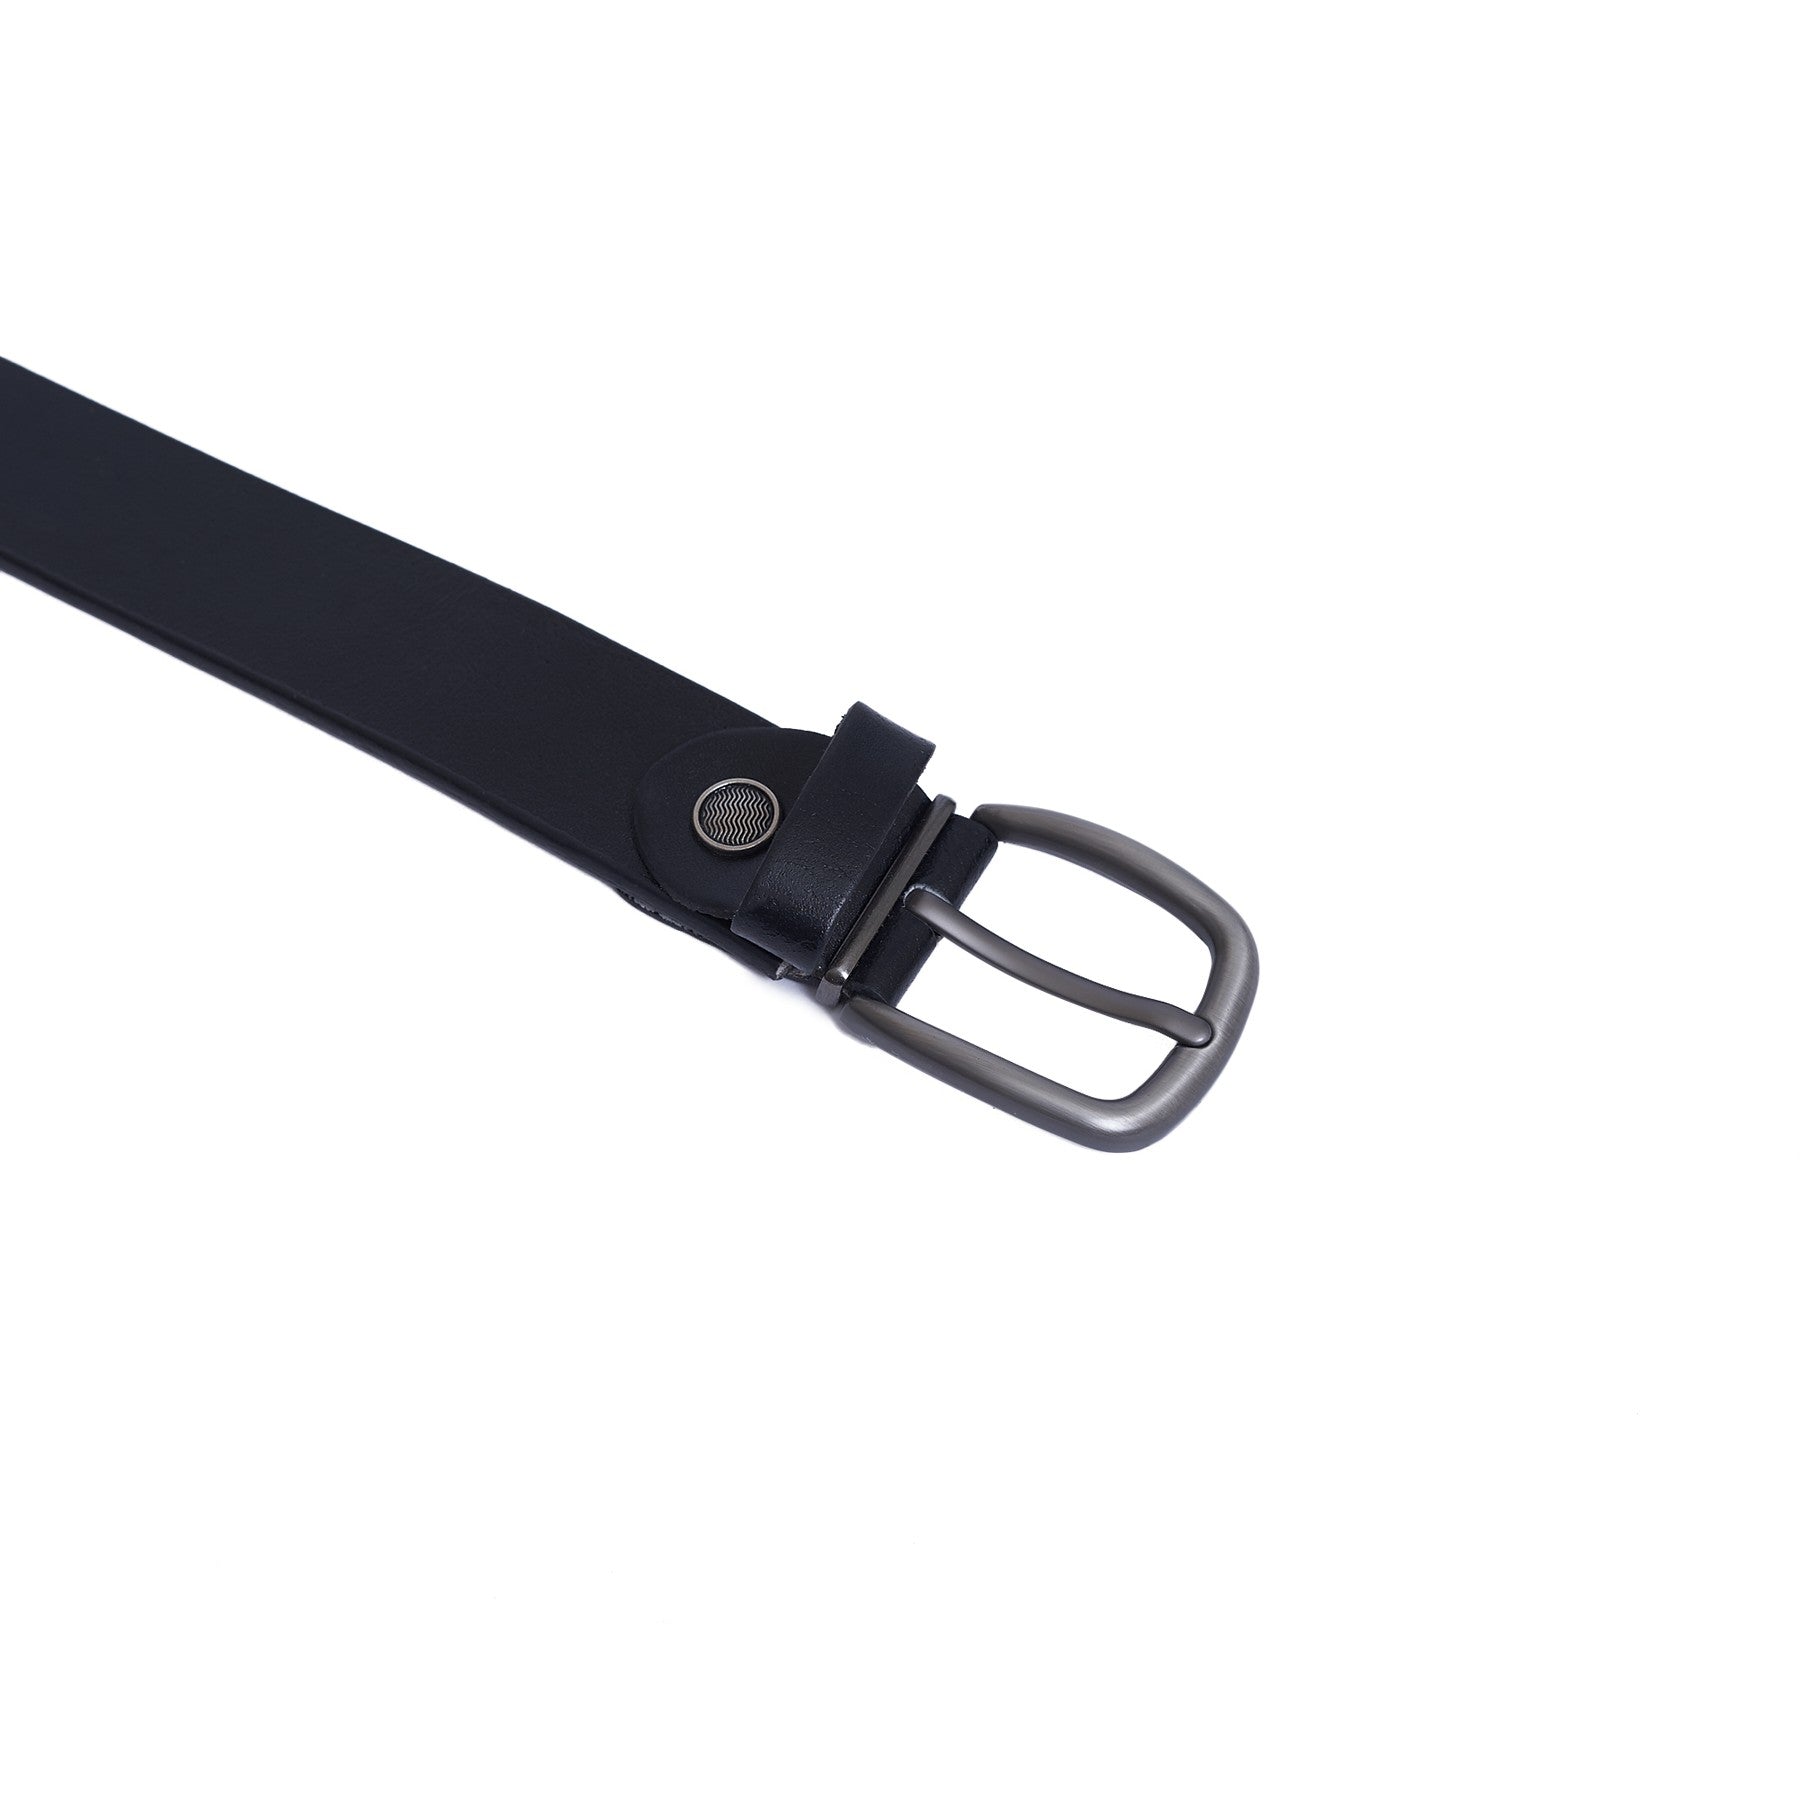 3 CM Genuine leather Belt - lux - Black Color Model B5101